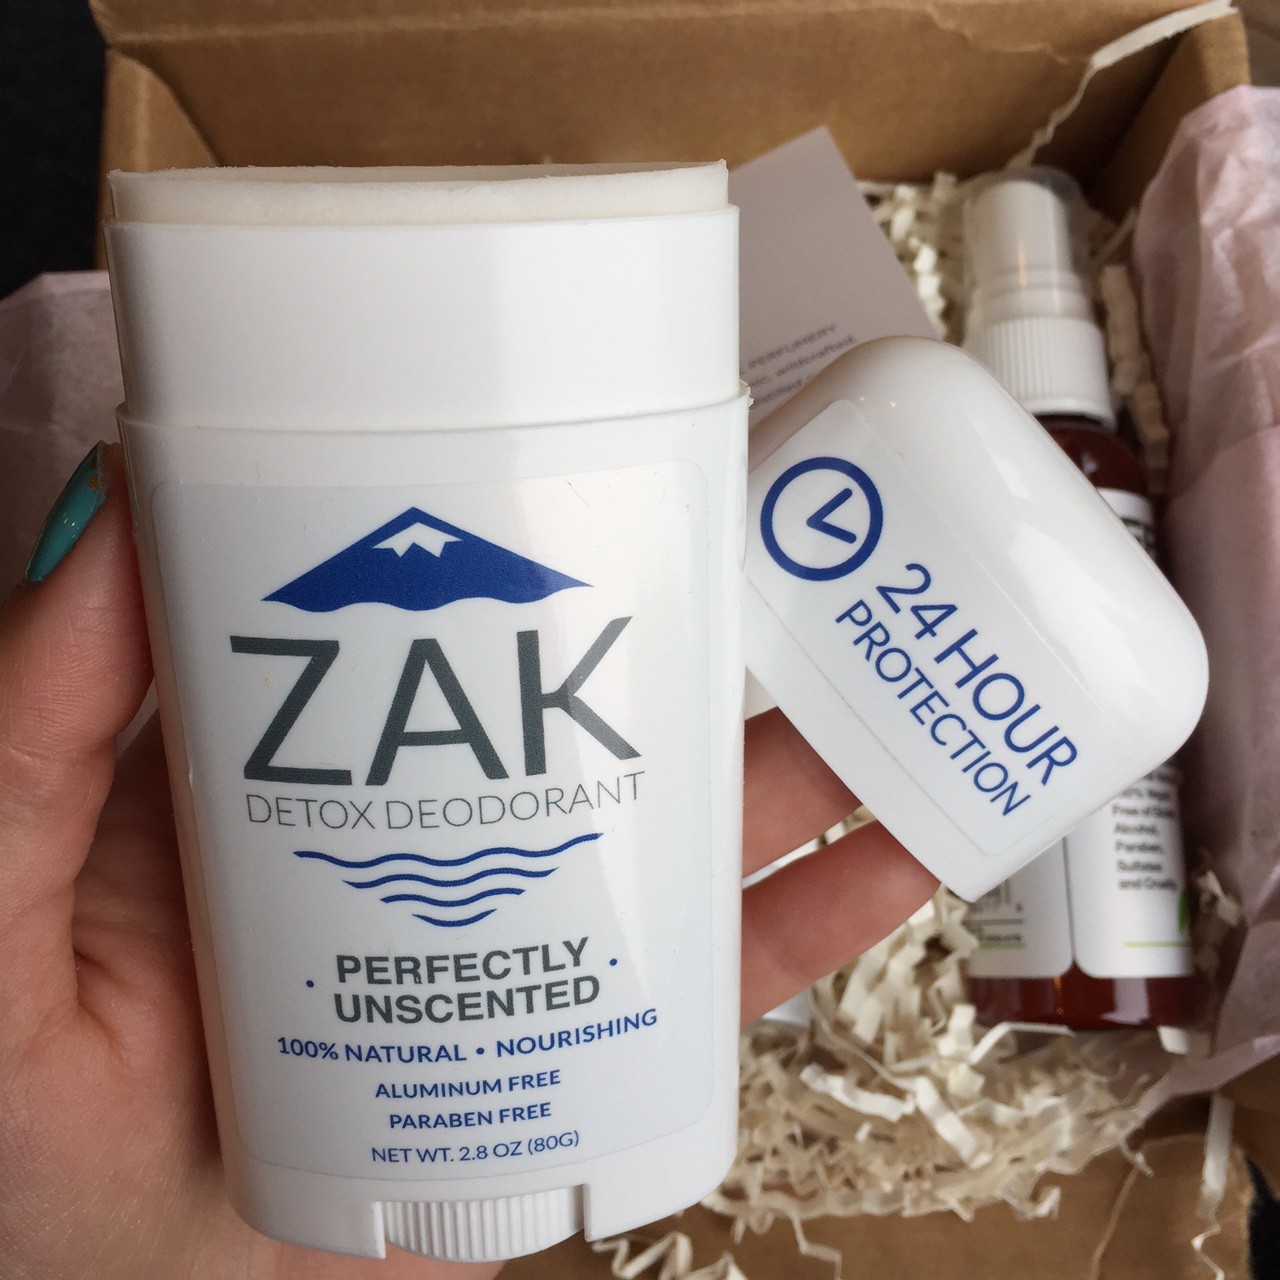 Zak Detox Deodorant